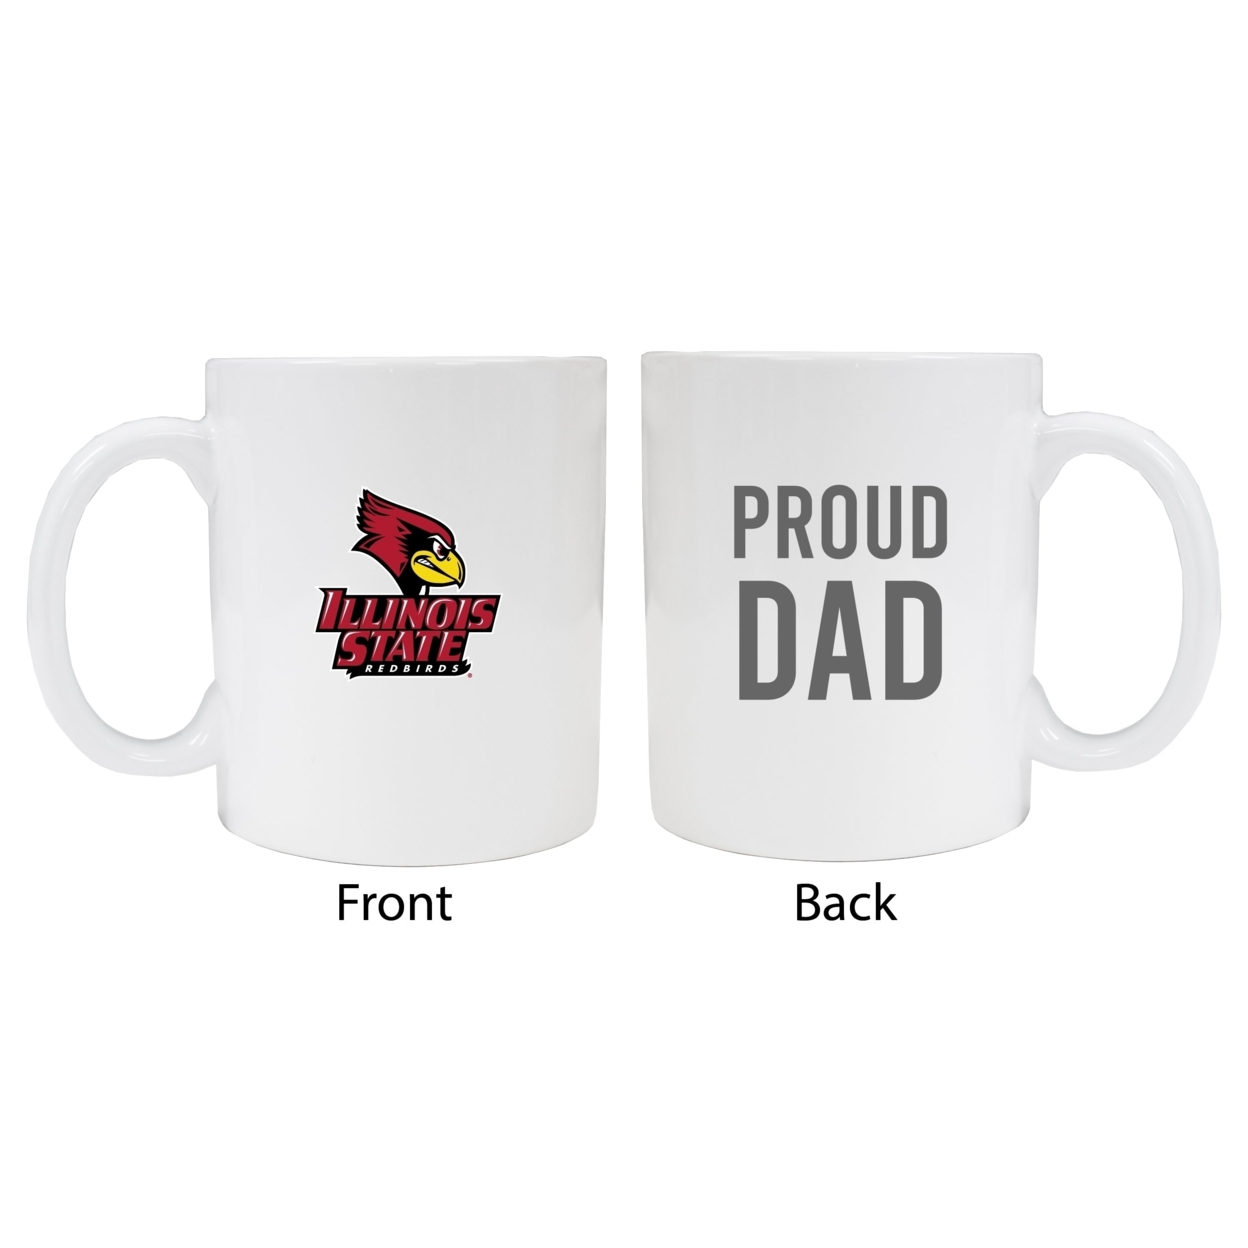 Illinois State Redbirds Proud Dad Ceramic Coffee Mug - White